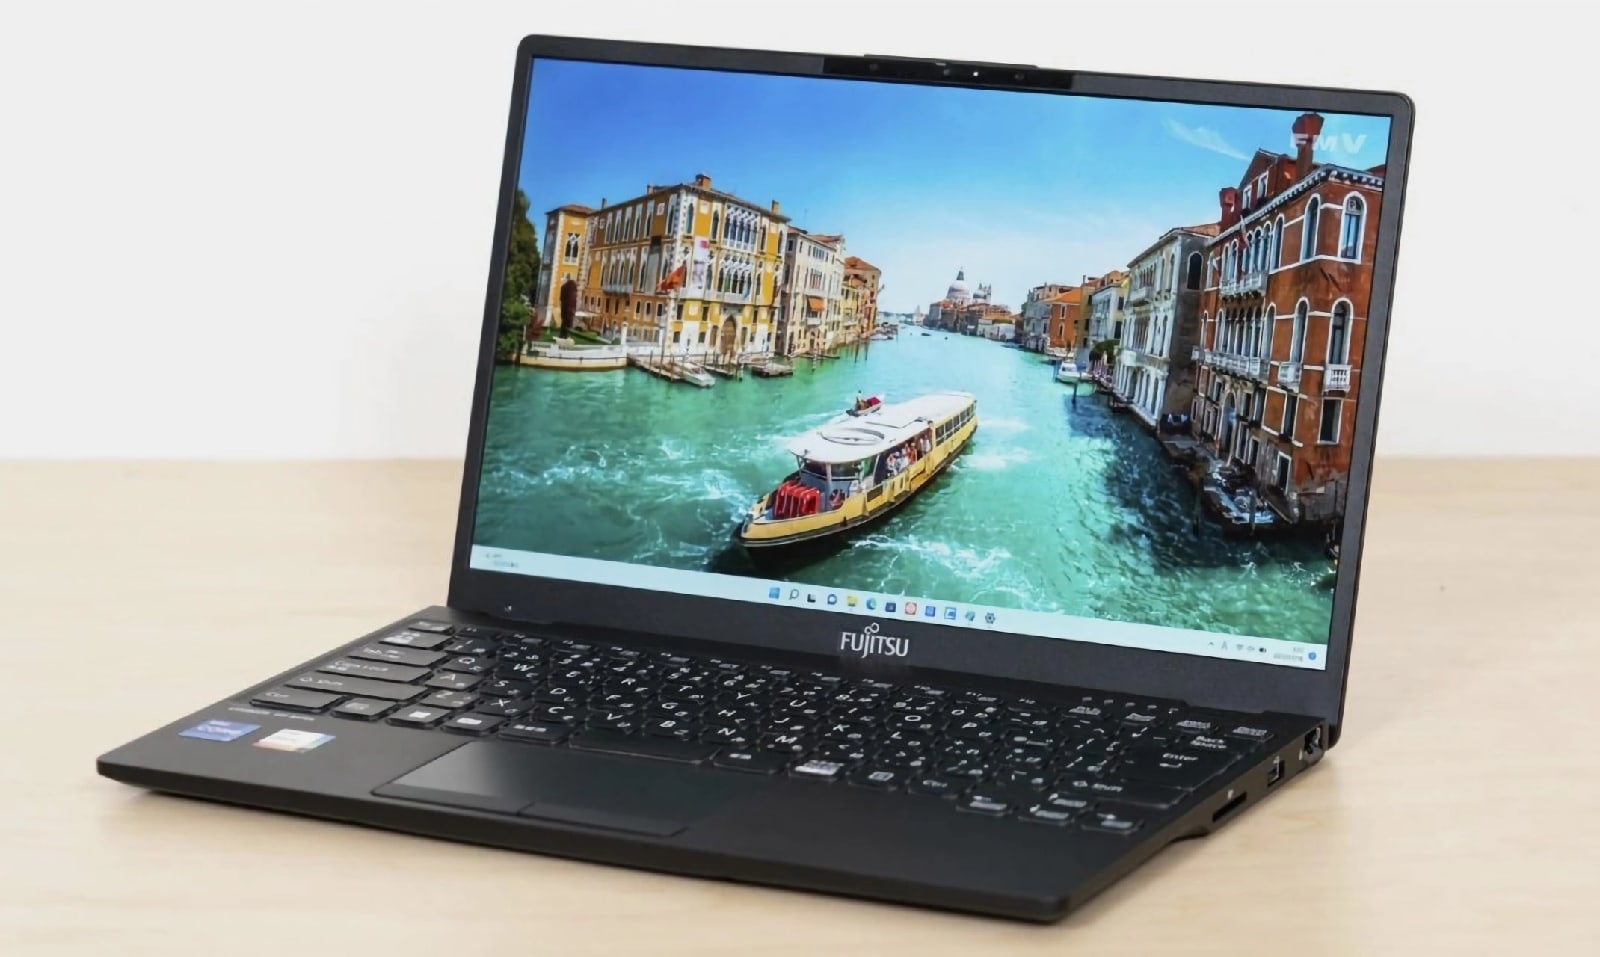 Компания Fujitsu представила самый легкий в мире 13-дюймовый ноутбук — Lifebook WU-X/G2 весом всего 634 грамма. 